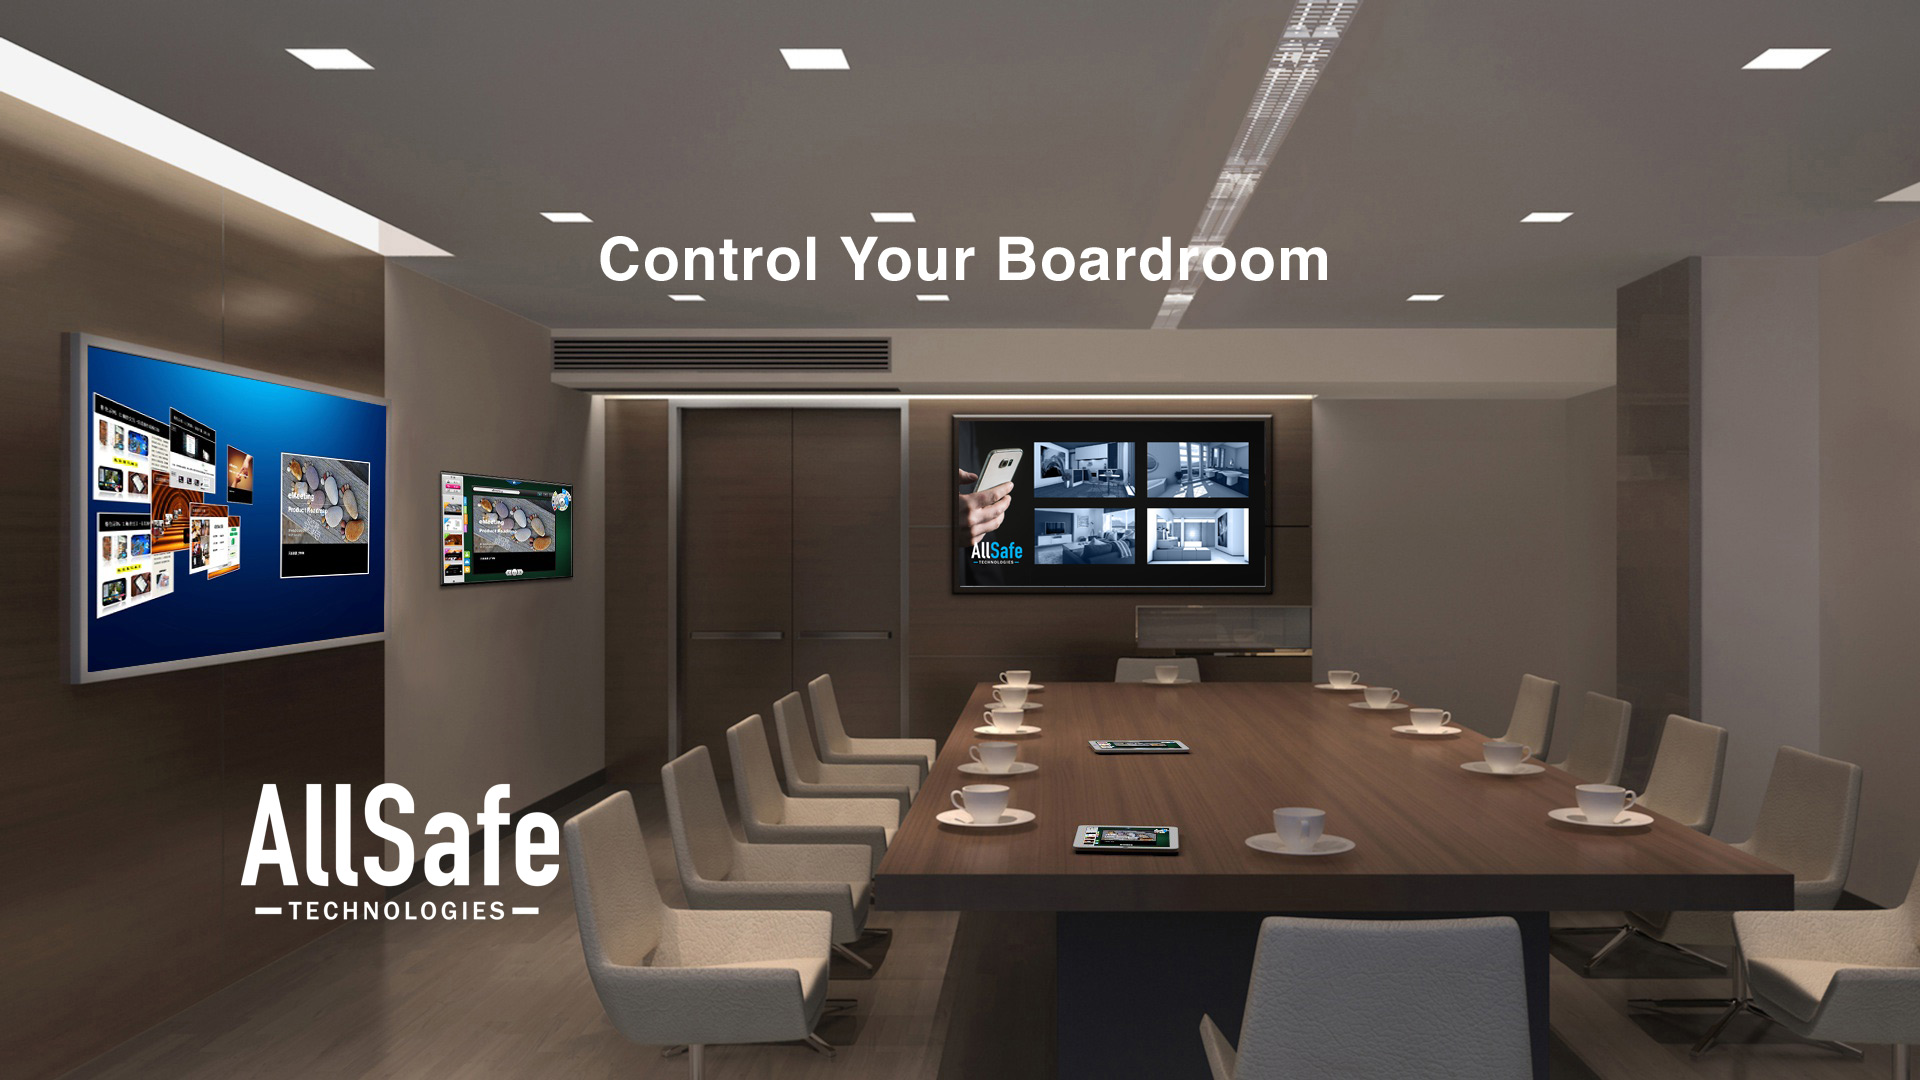 Control the Boardroom